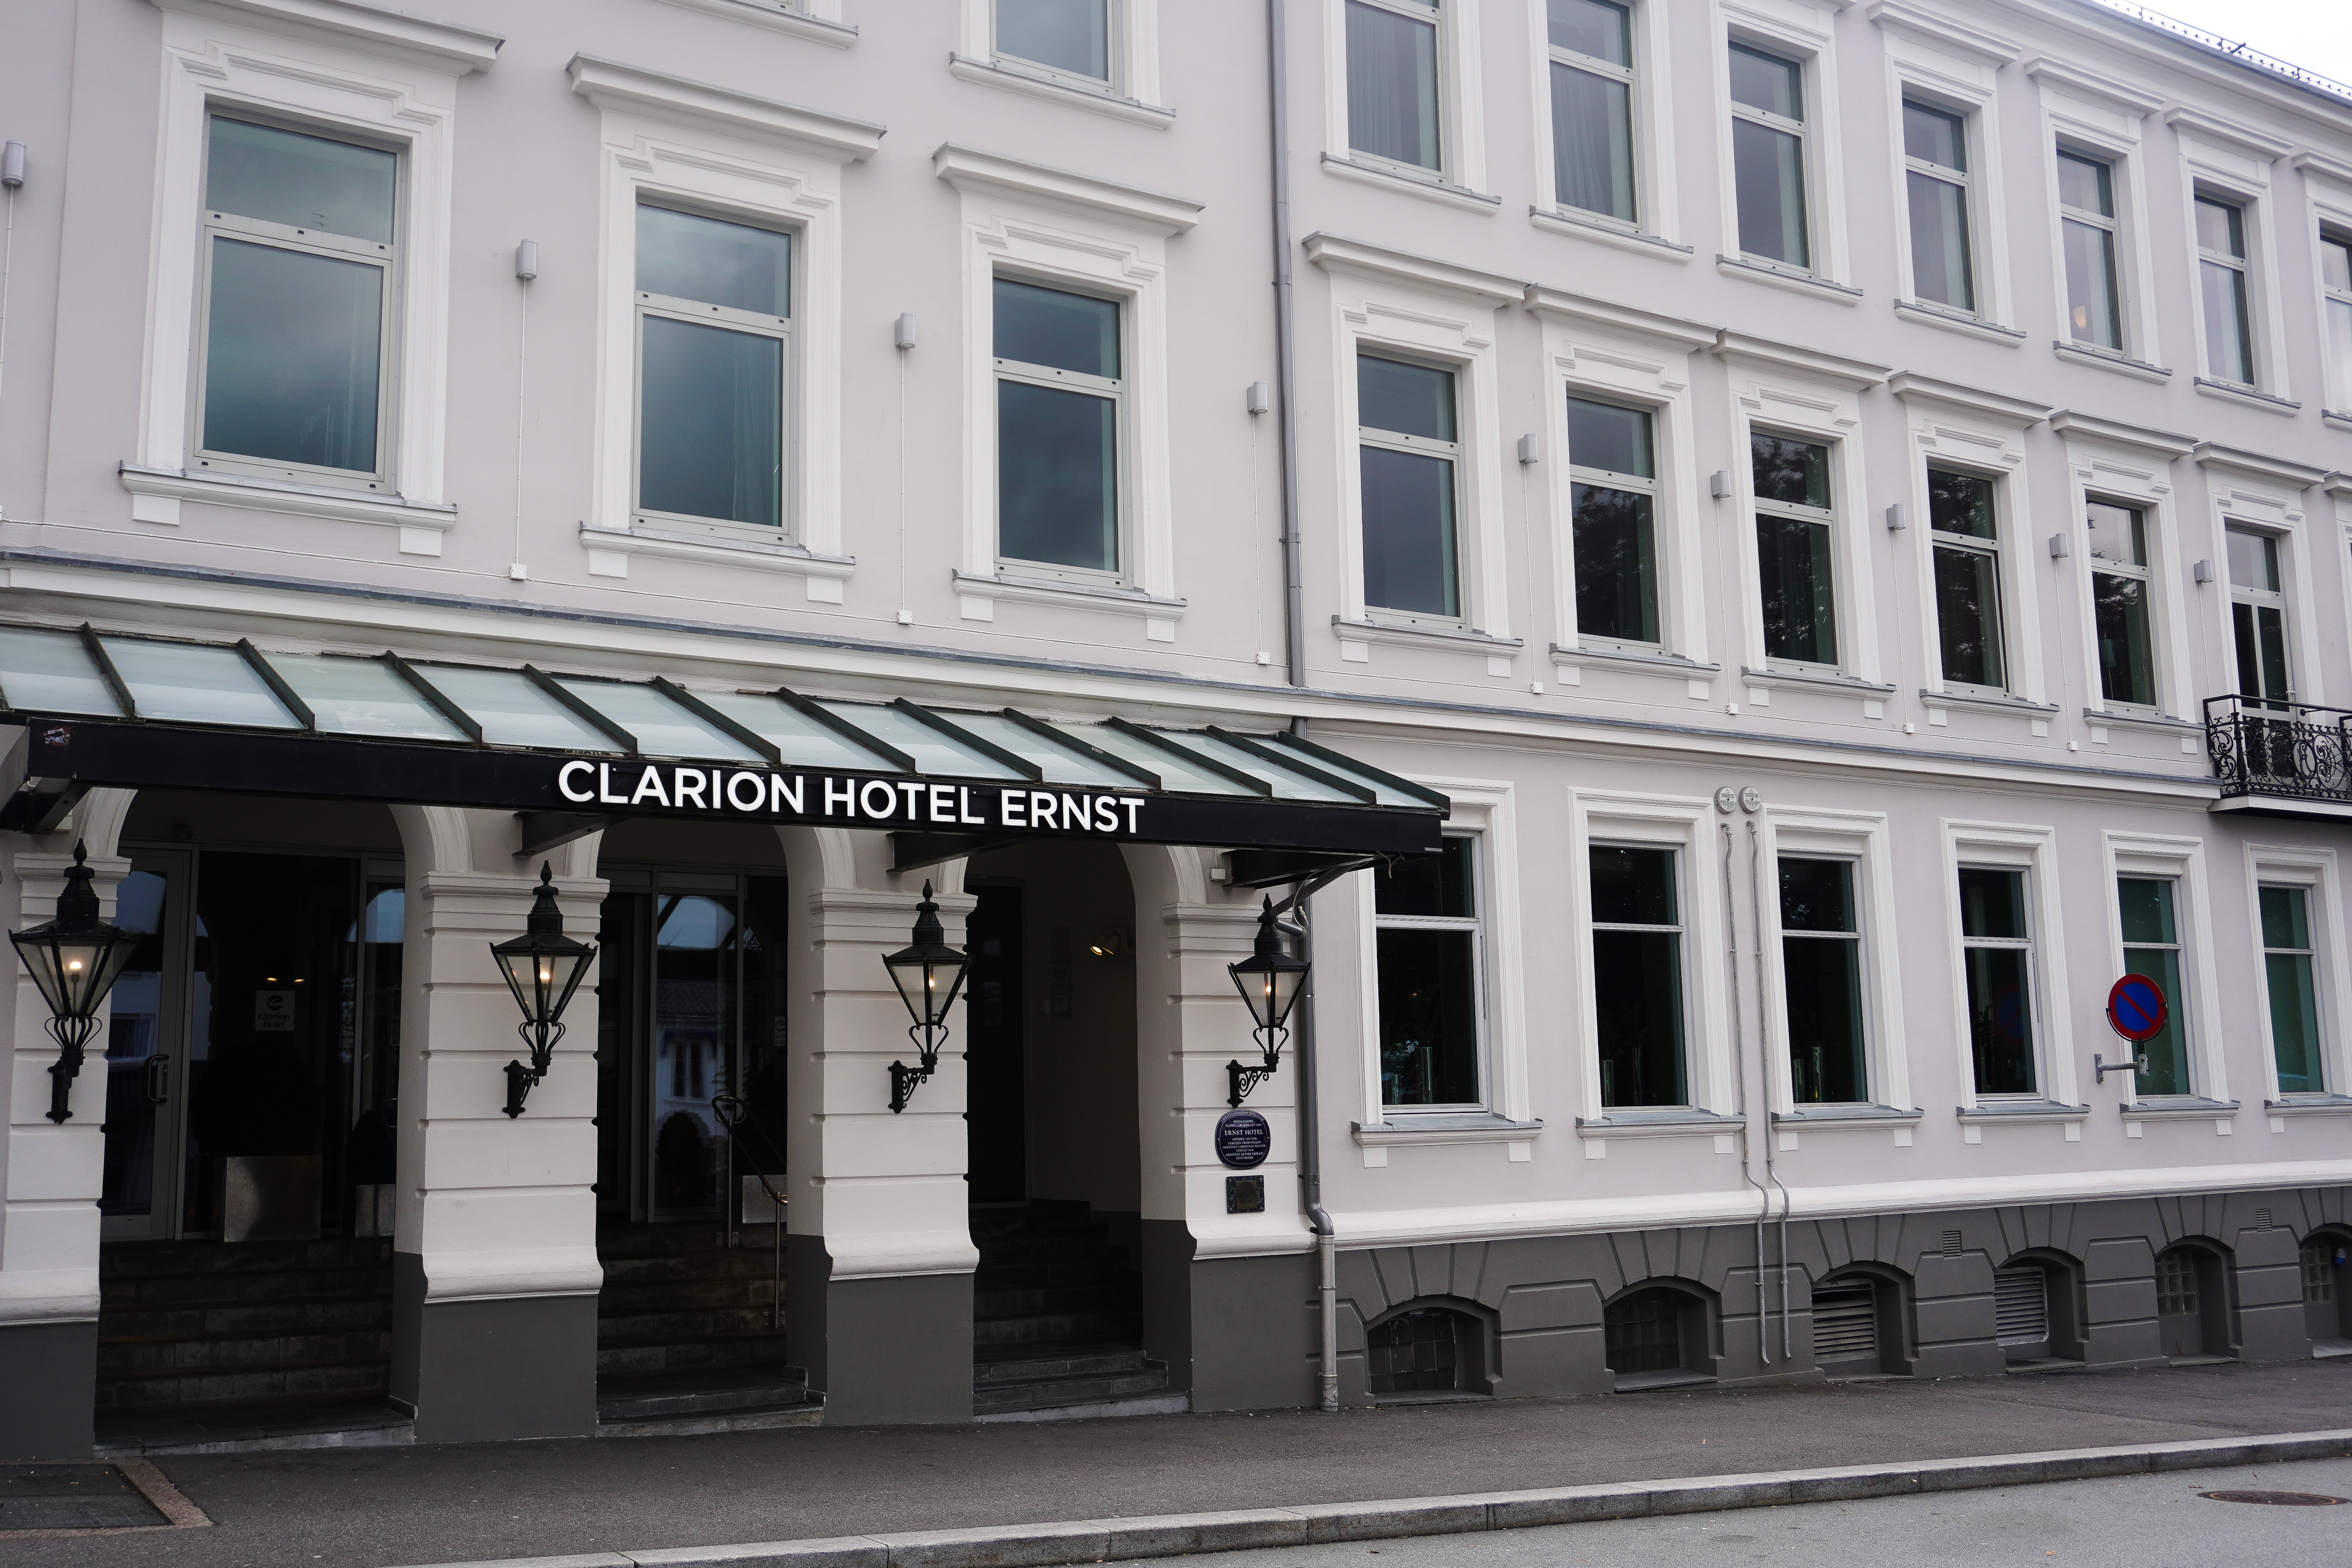 Clarion Hotel Ernst